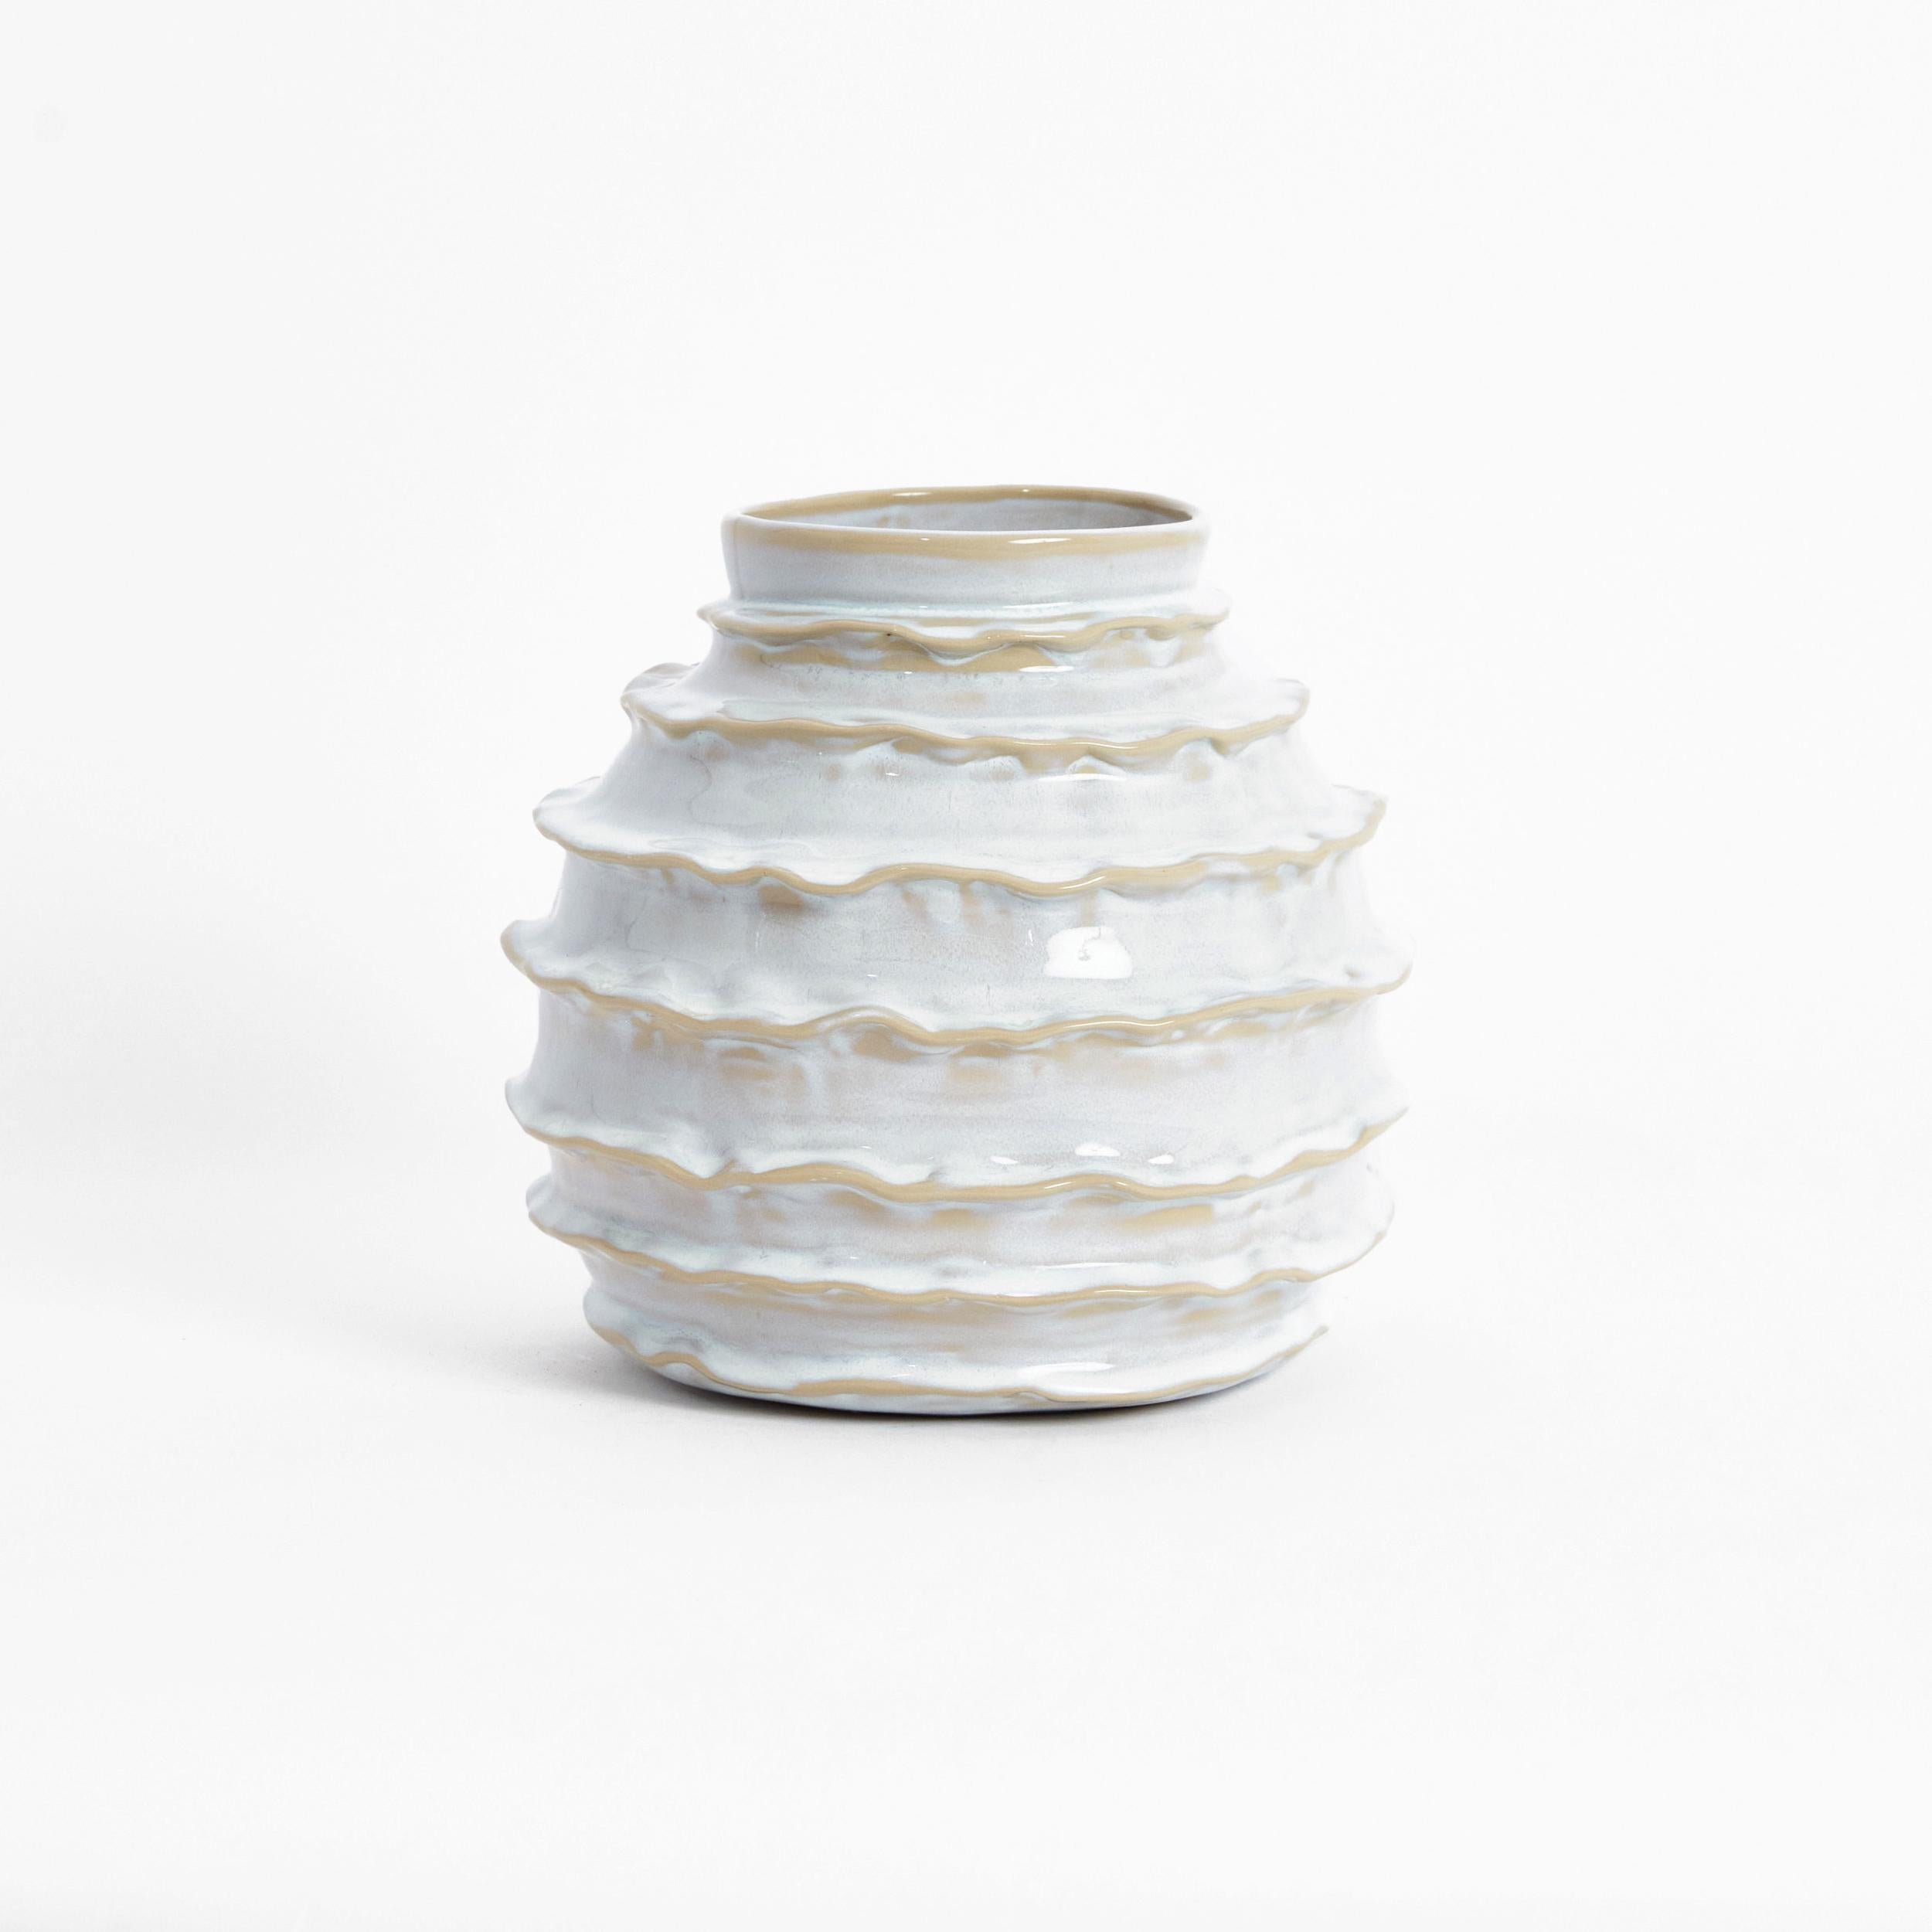 Urlaubsvase in glänzendem Weiß.

Entworfen von Project 213A im Jahr 2021 aus handgefertigtem Steingut.

Die ovale, an den Rändern gekräuselte Vase sorgt für einen Kontrast der Leichtigkeit. Diese handgefertigte und verzierte Vase ist mit einer